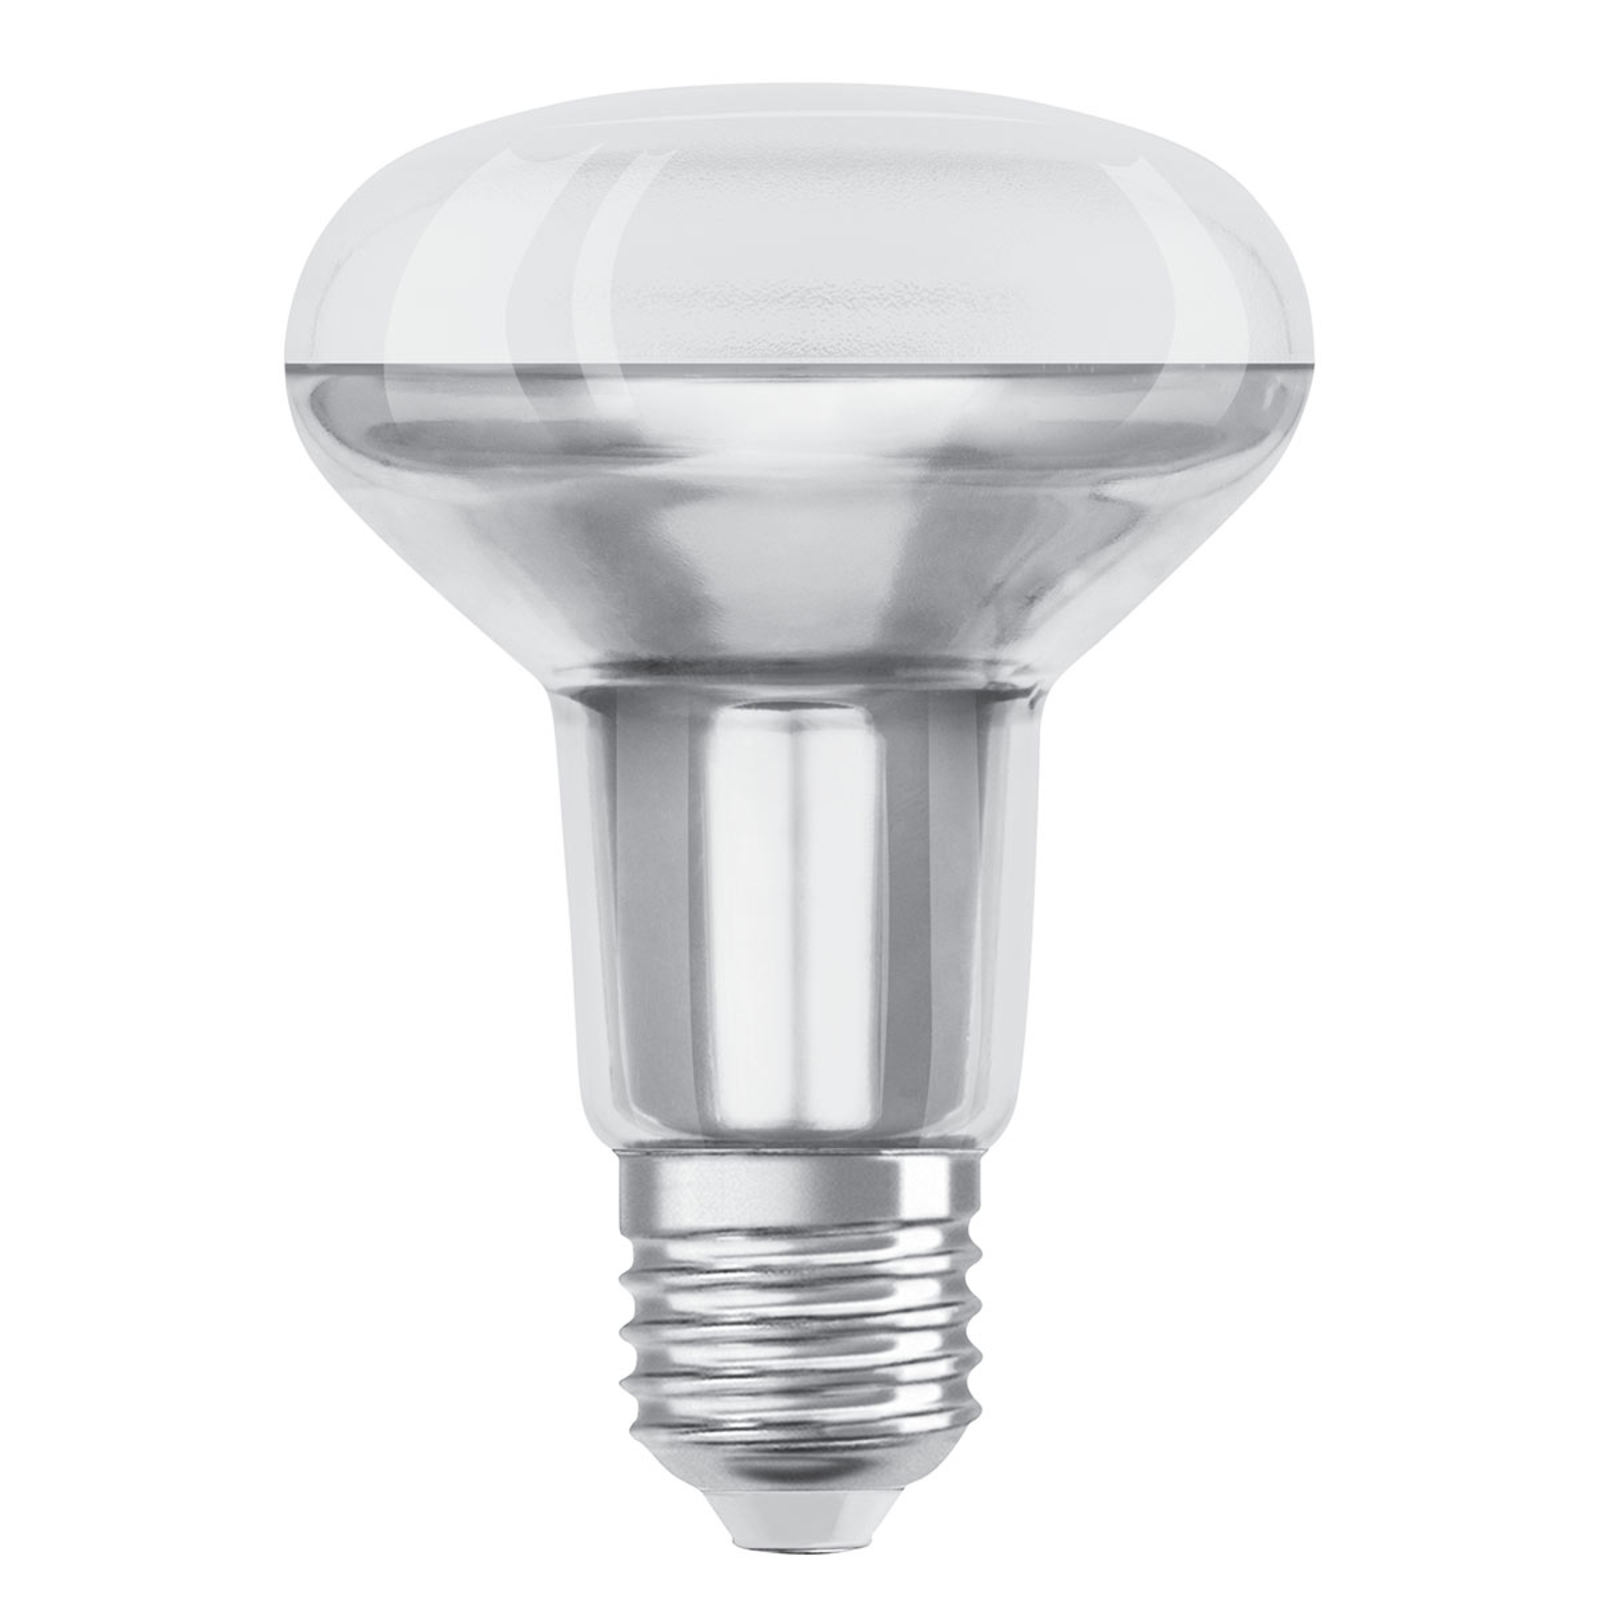 OSRAM LED reflector bulb R80 927 36° dim Lights.co.uk